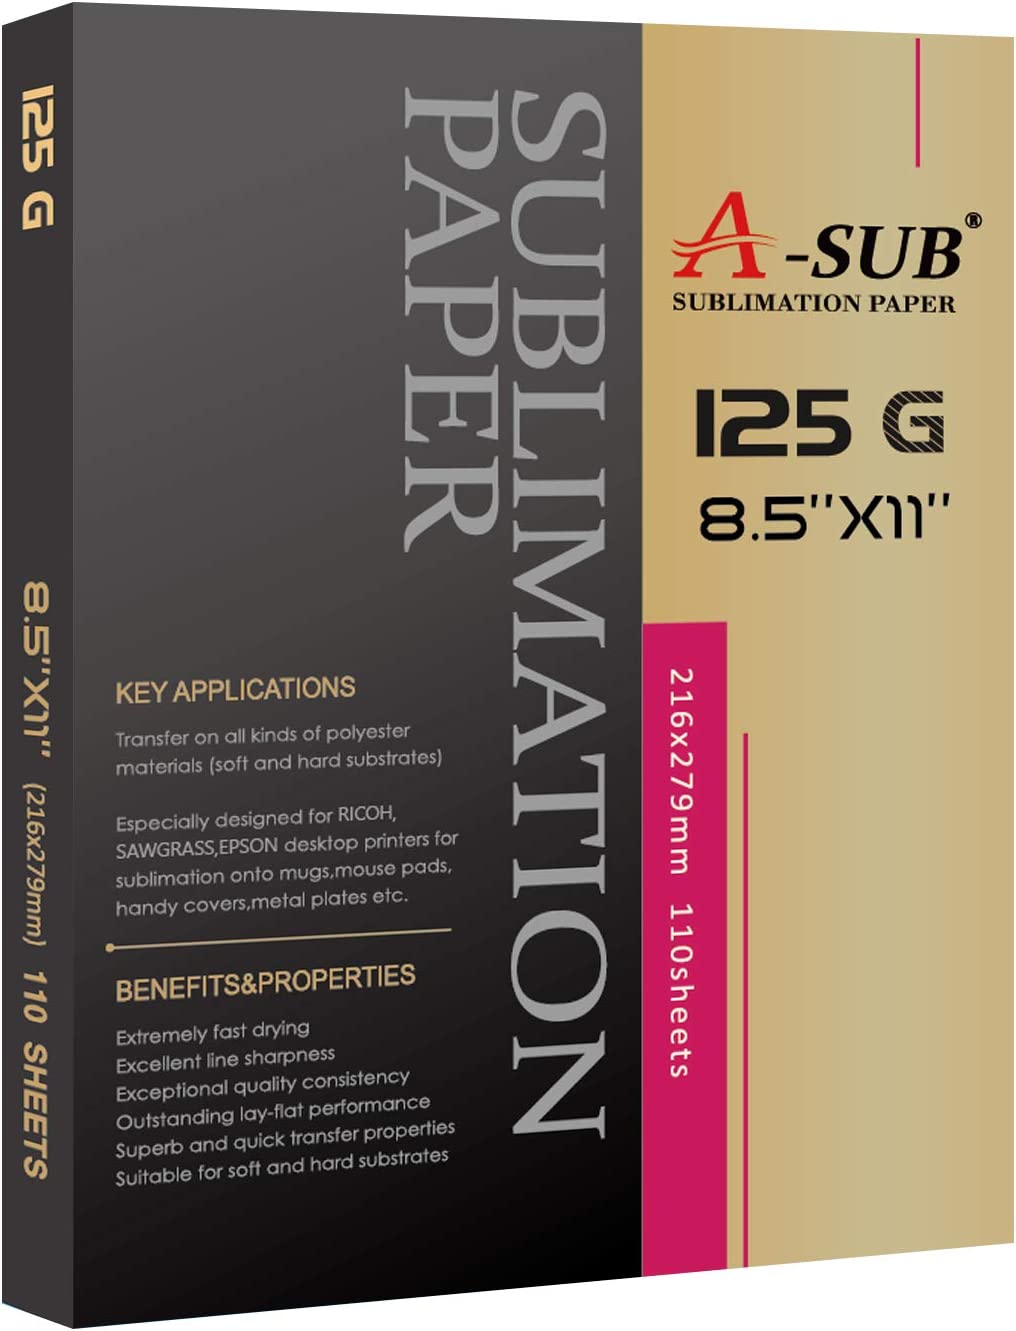 A-SUB Sublimation Paper